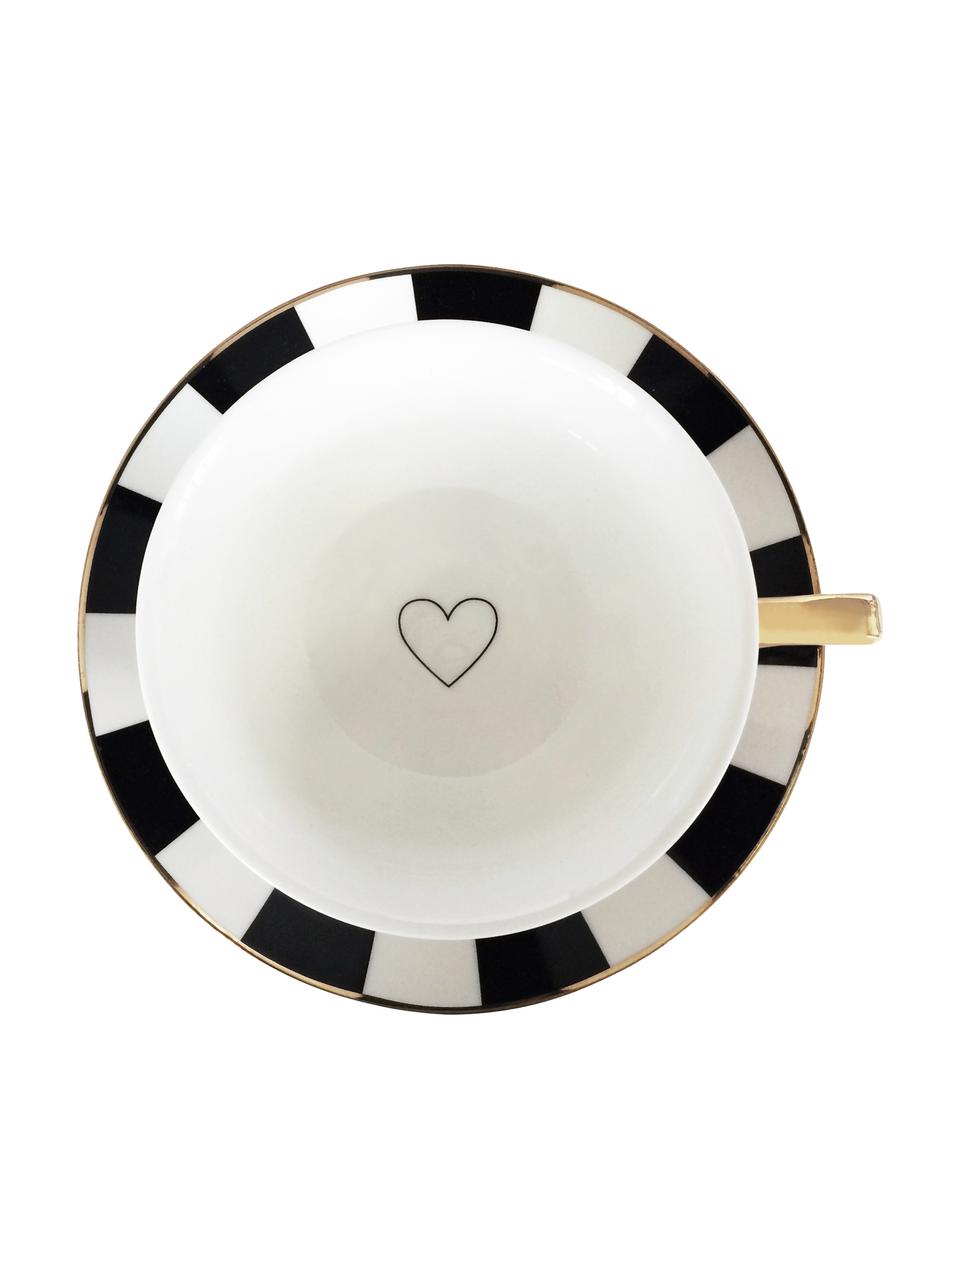 Tazza da tè con piattino Stripy, Porcellana cinese dorata, Nero, bianco Bordo e manico: dorato, Ø 15 x Alt. 6 cm